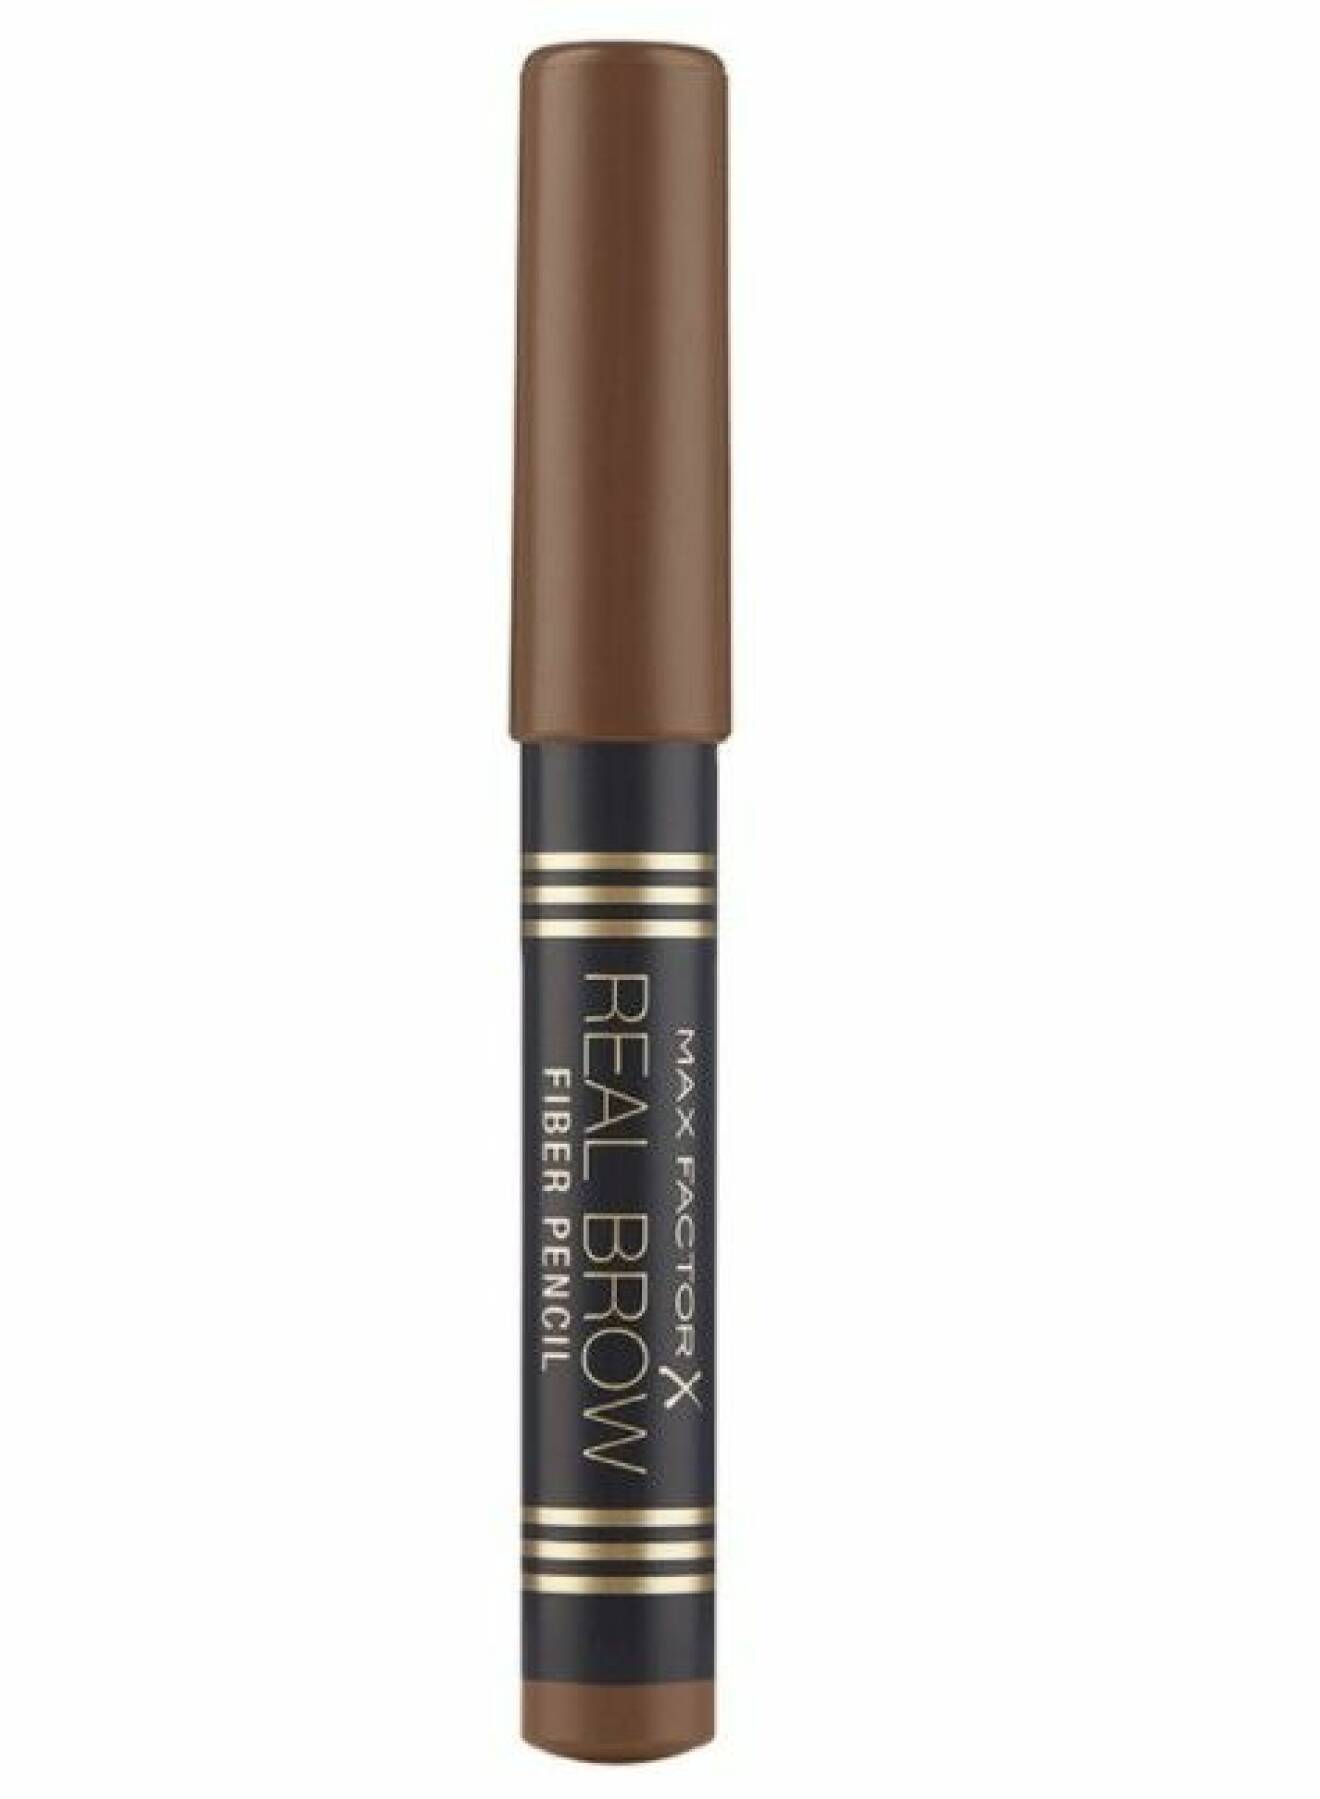 Ögonsbryns pennan Real Brow Fiber Pencil från Max Factor